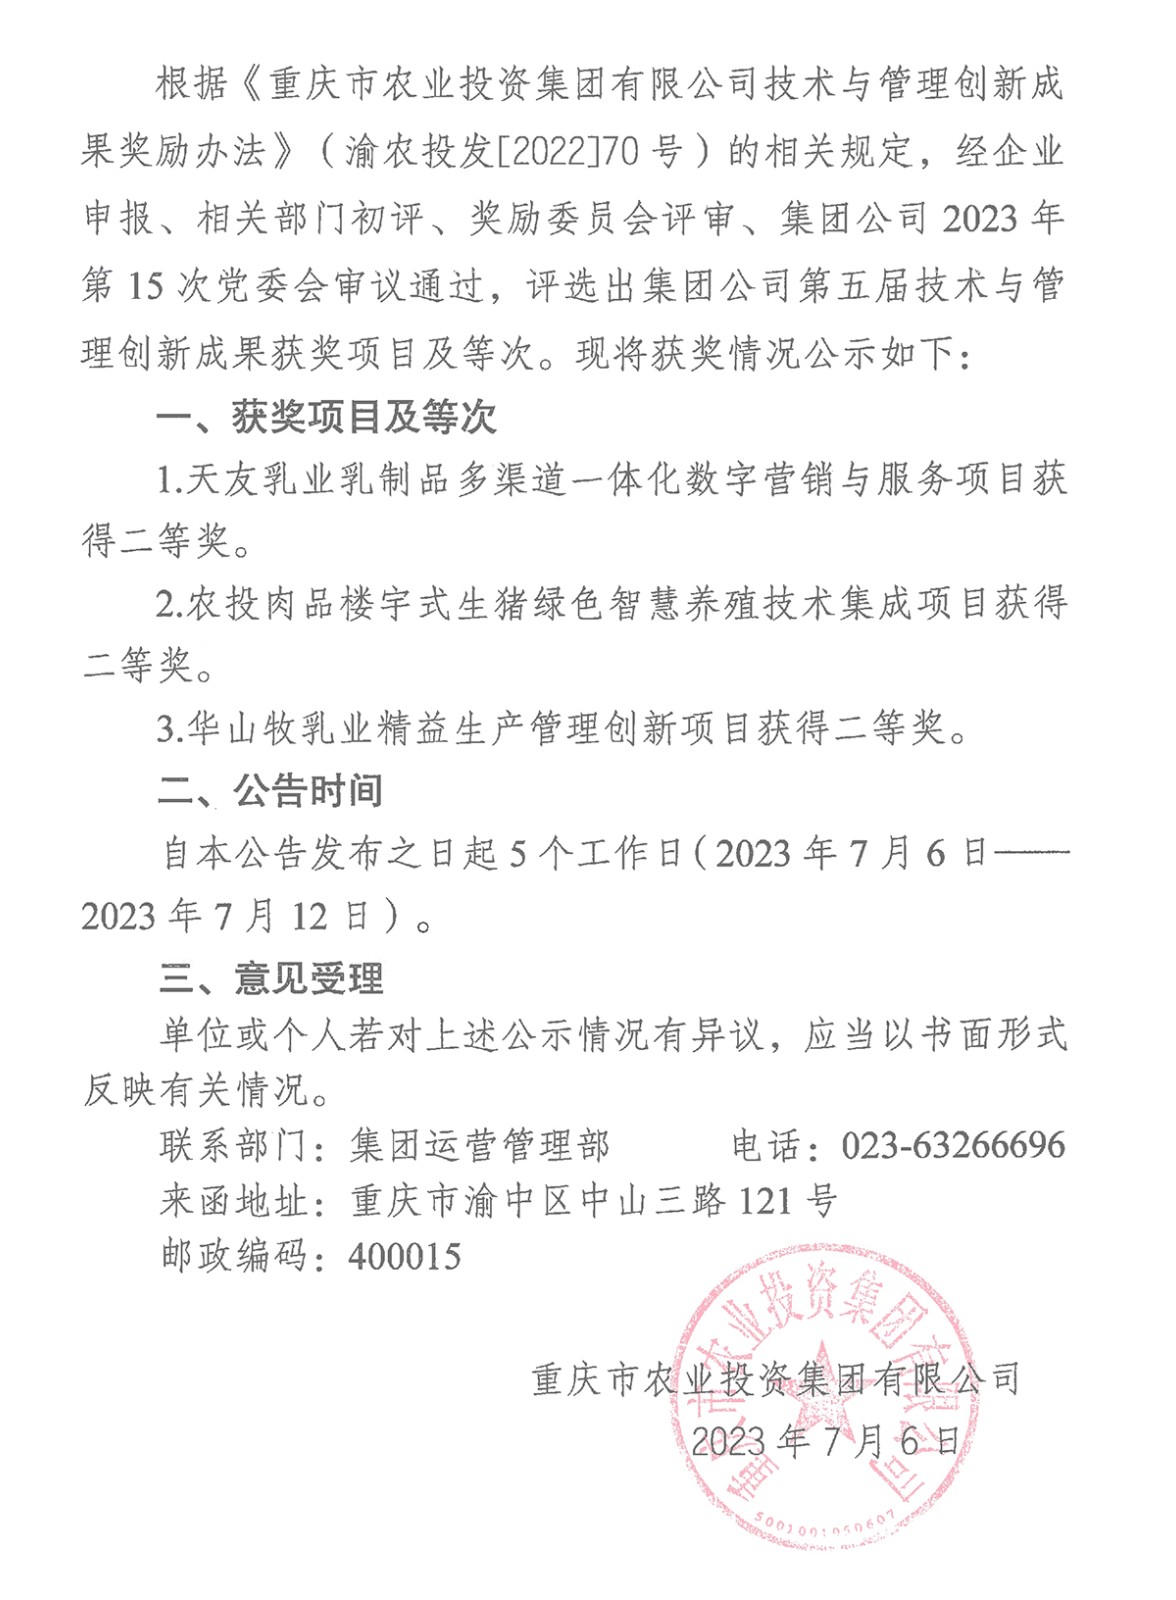 070615442100_0重庆市农业投资集团有限公司关于2023年第五届技术与管理创新成果评选奖励有关情况的公告_1.Jpeg